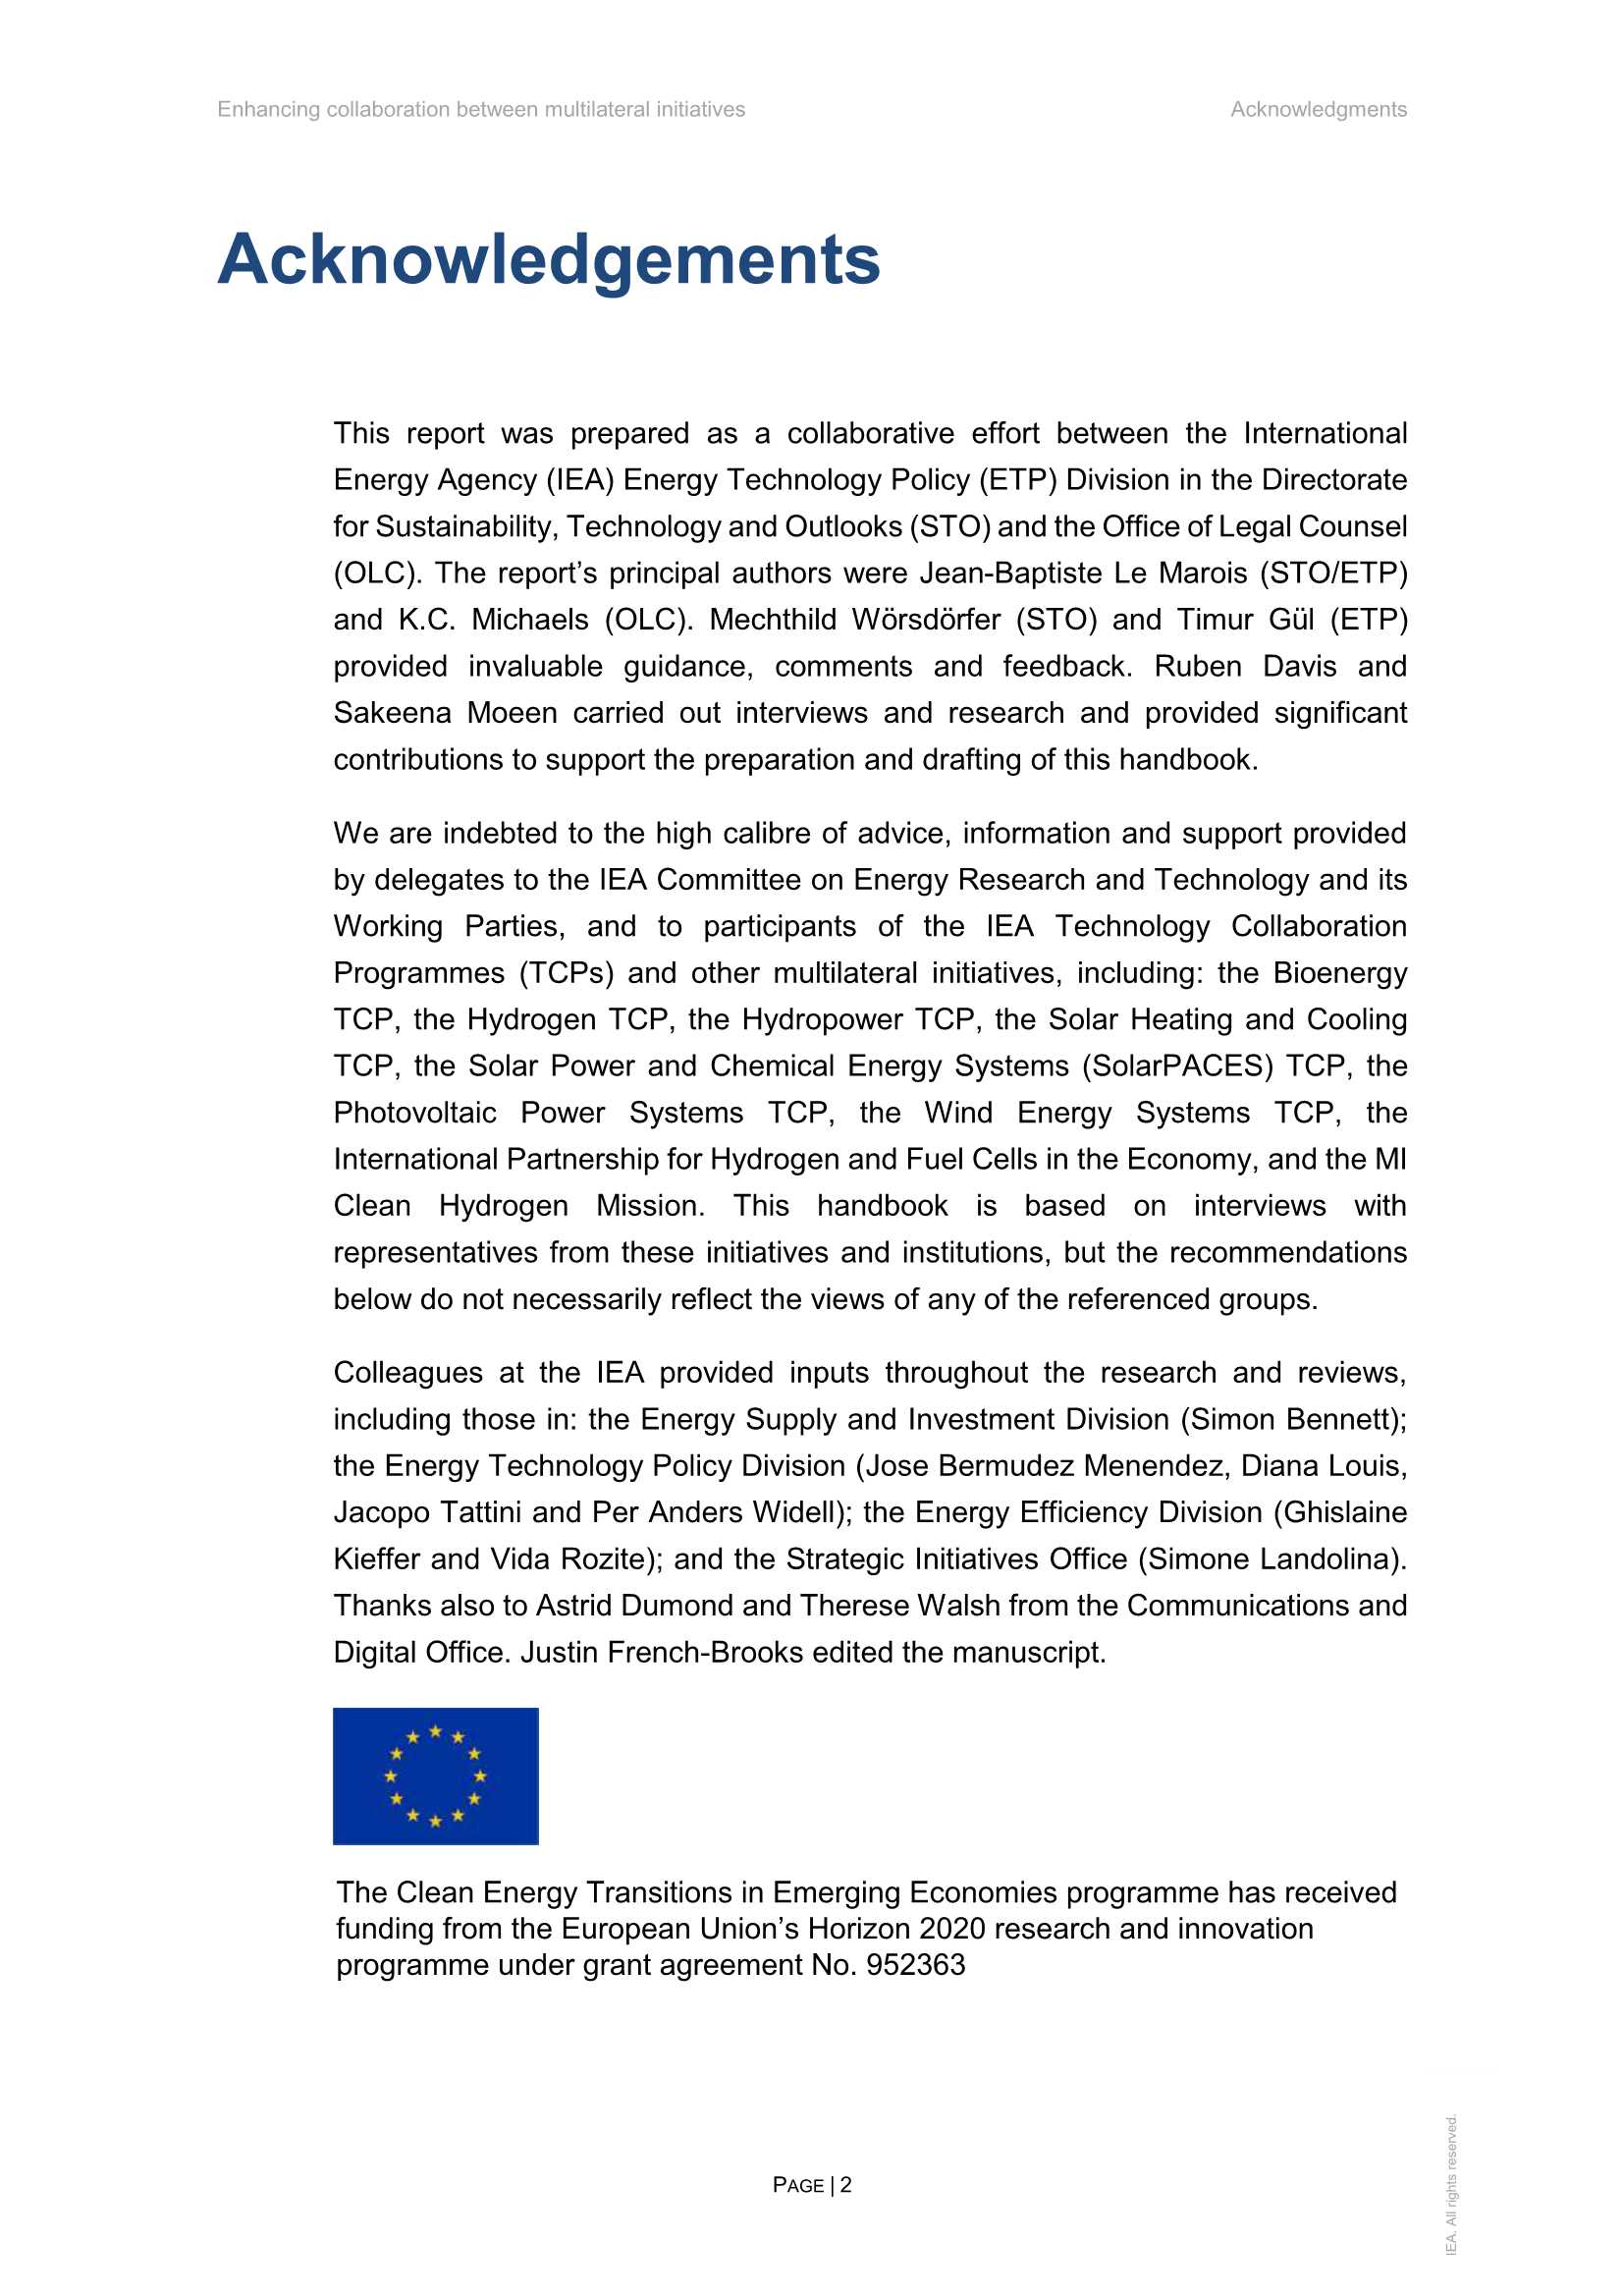 国际能源署-加强多边倡议之间的合作（英）-2021.11-48页